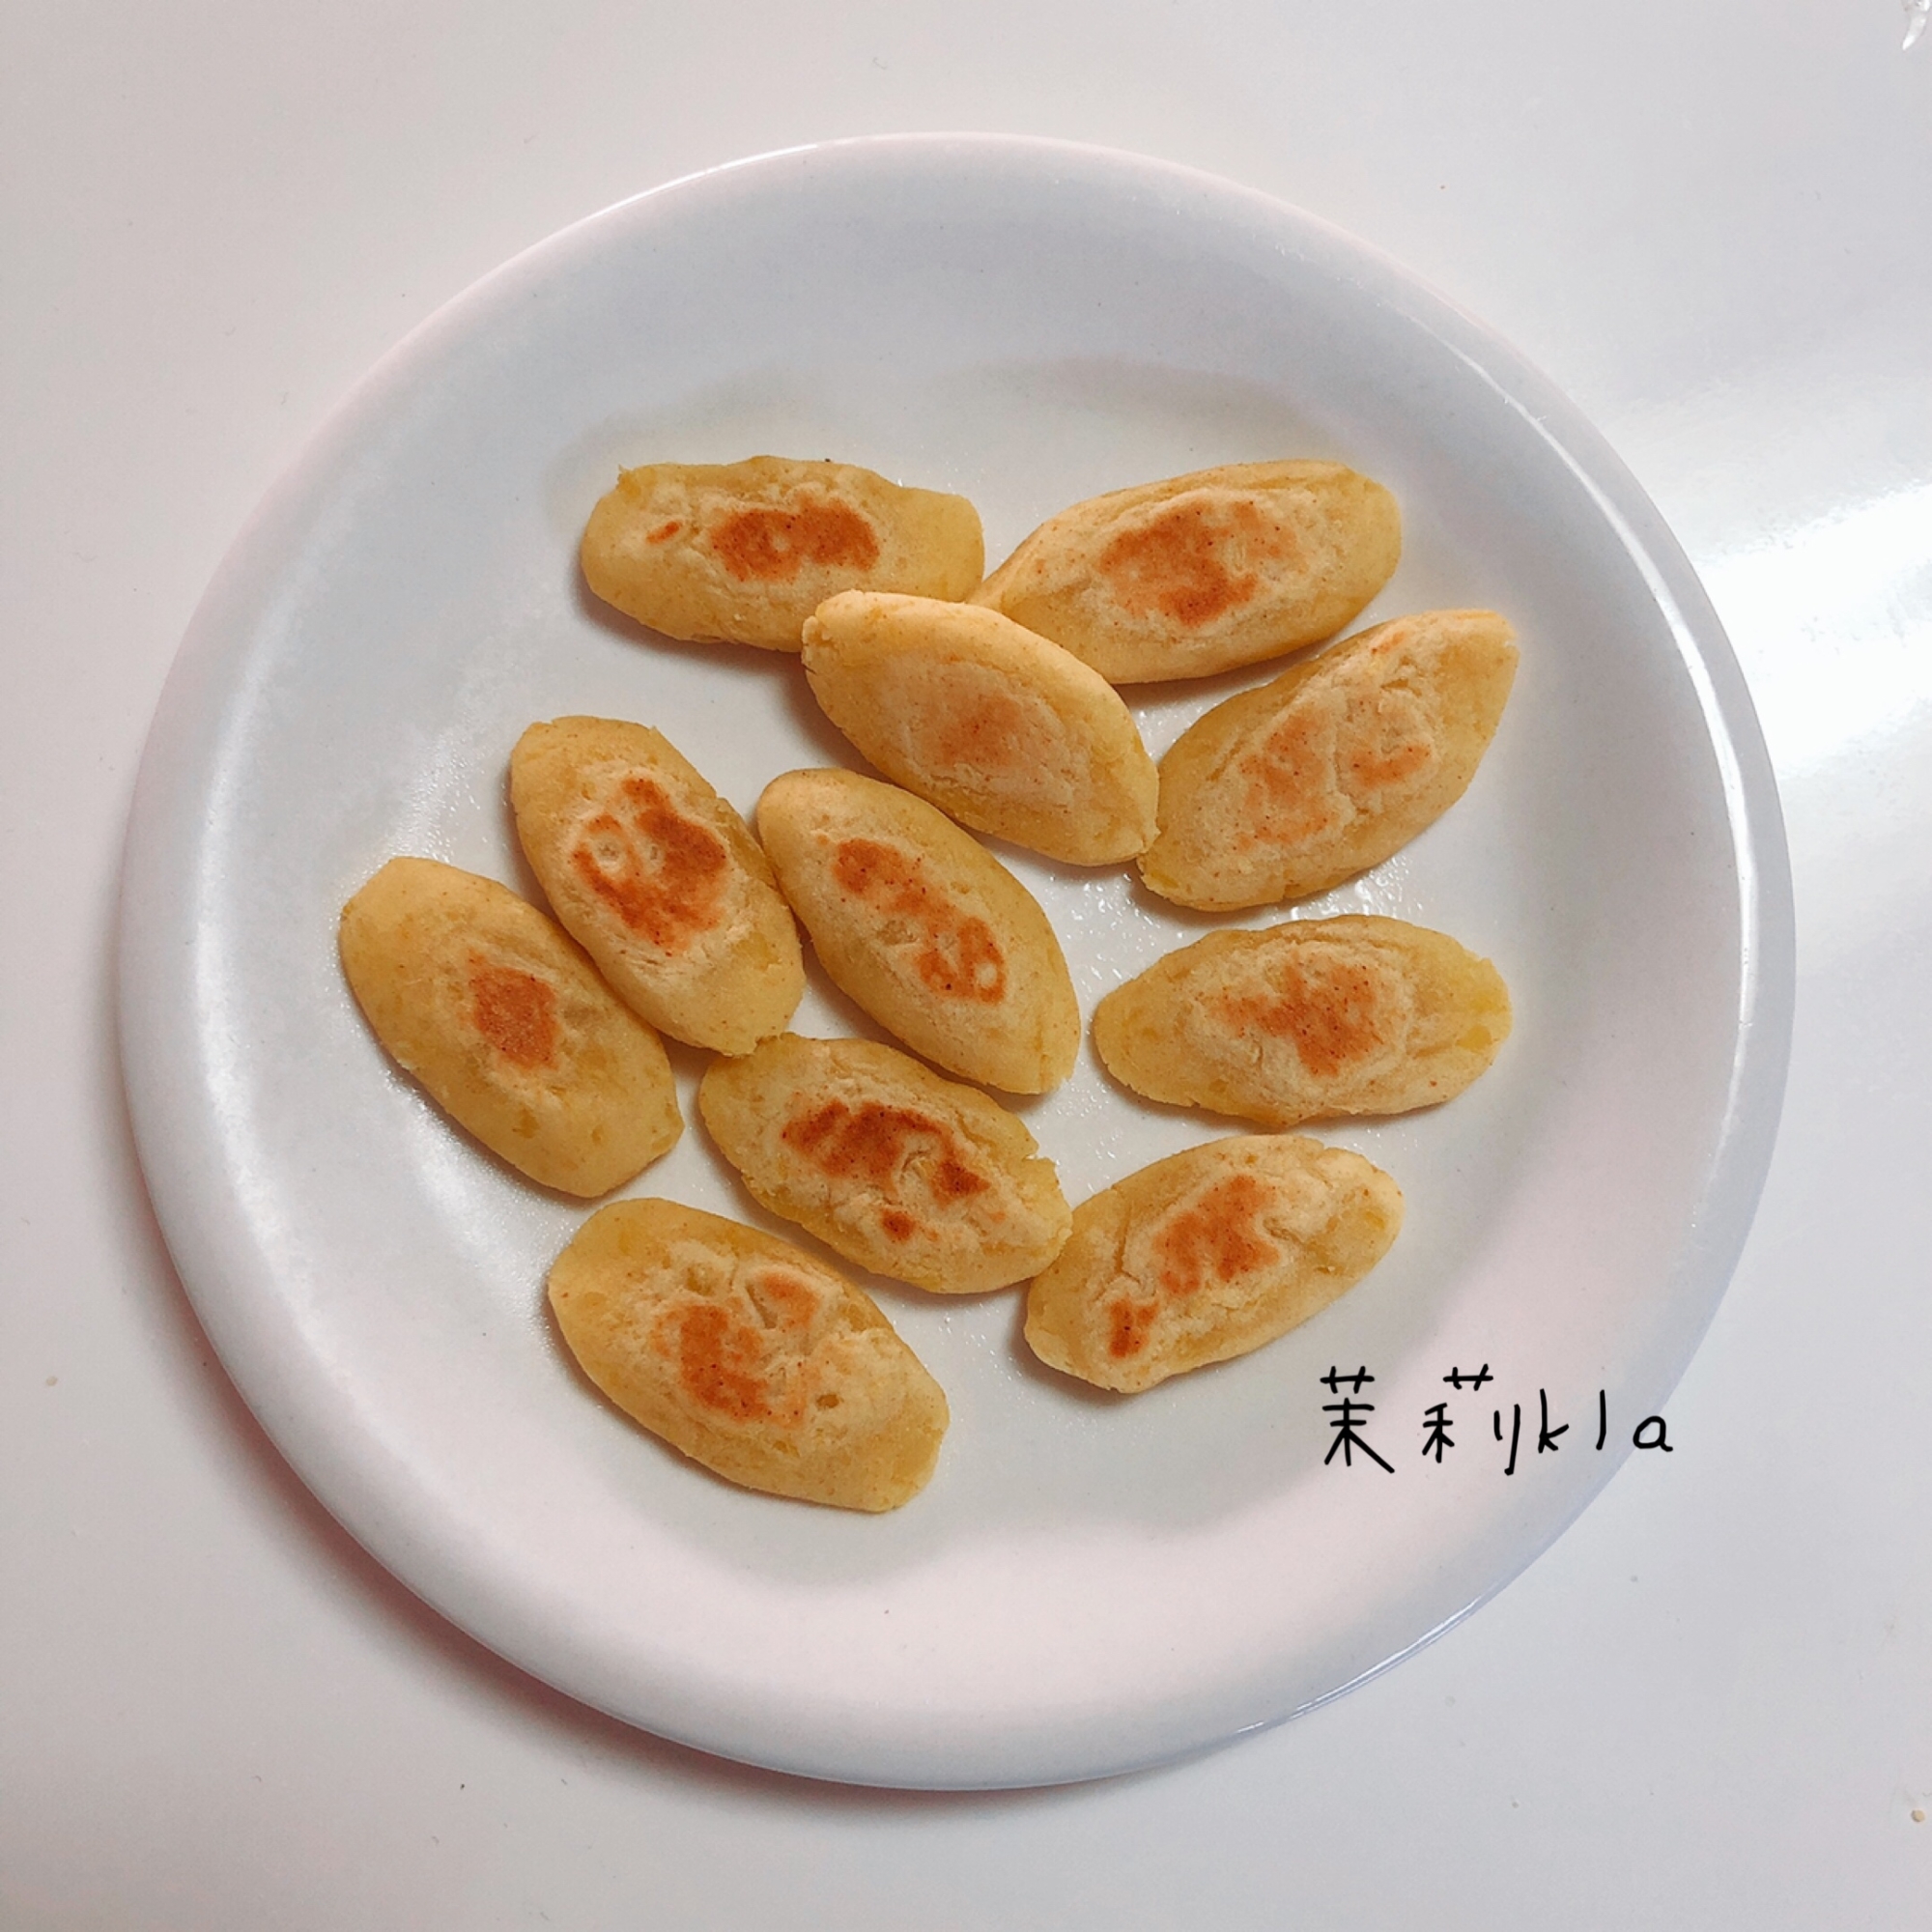 離乳食 9ヶ月 さつま芋ときな粉のおやき レシピ 作り方 By 茉莉kla 楽天レシピ